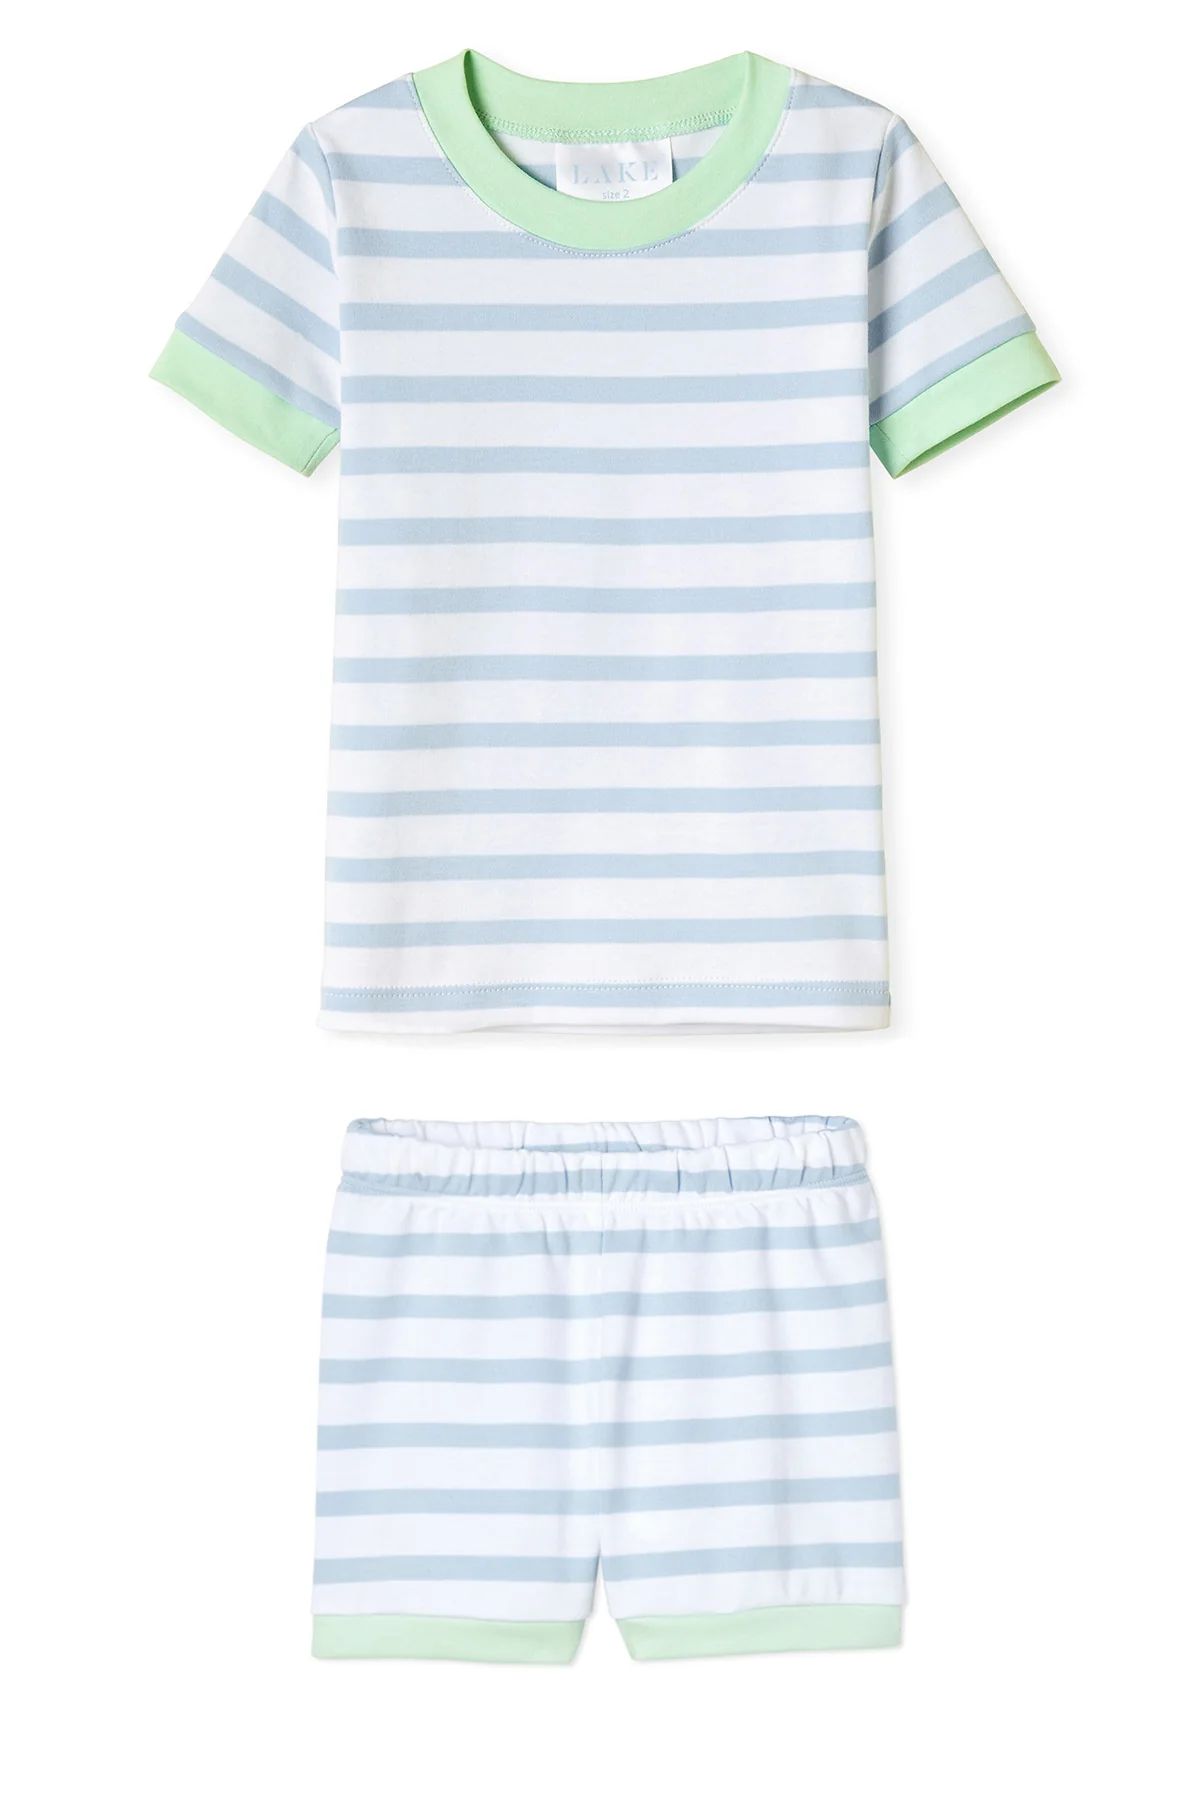 Kids Shorts Set in Saltwater | LAKE Pajamas